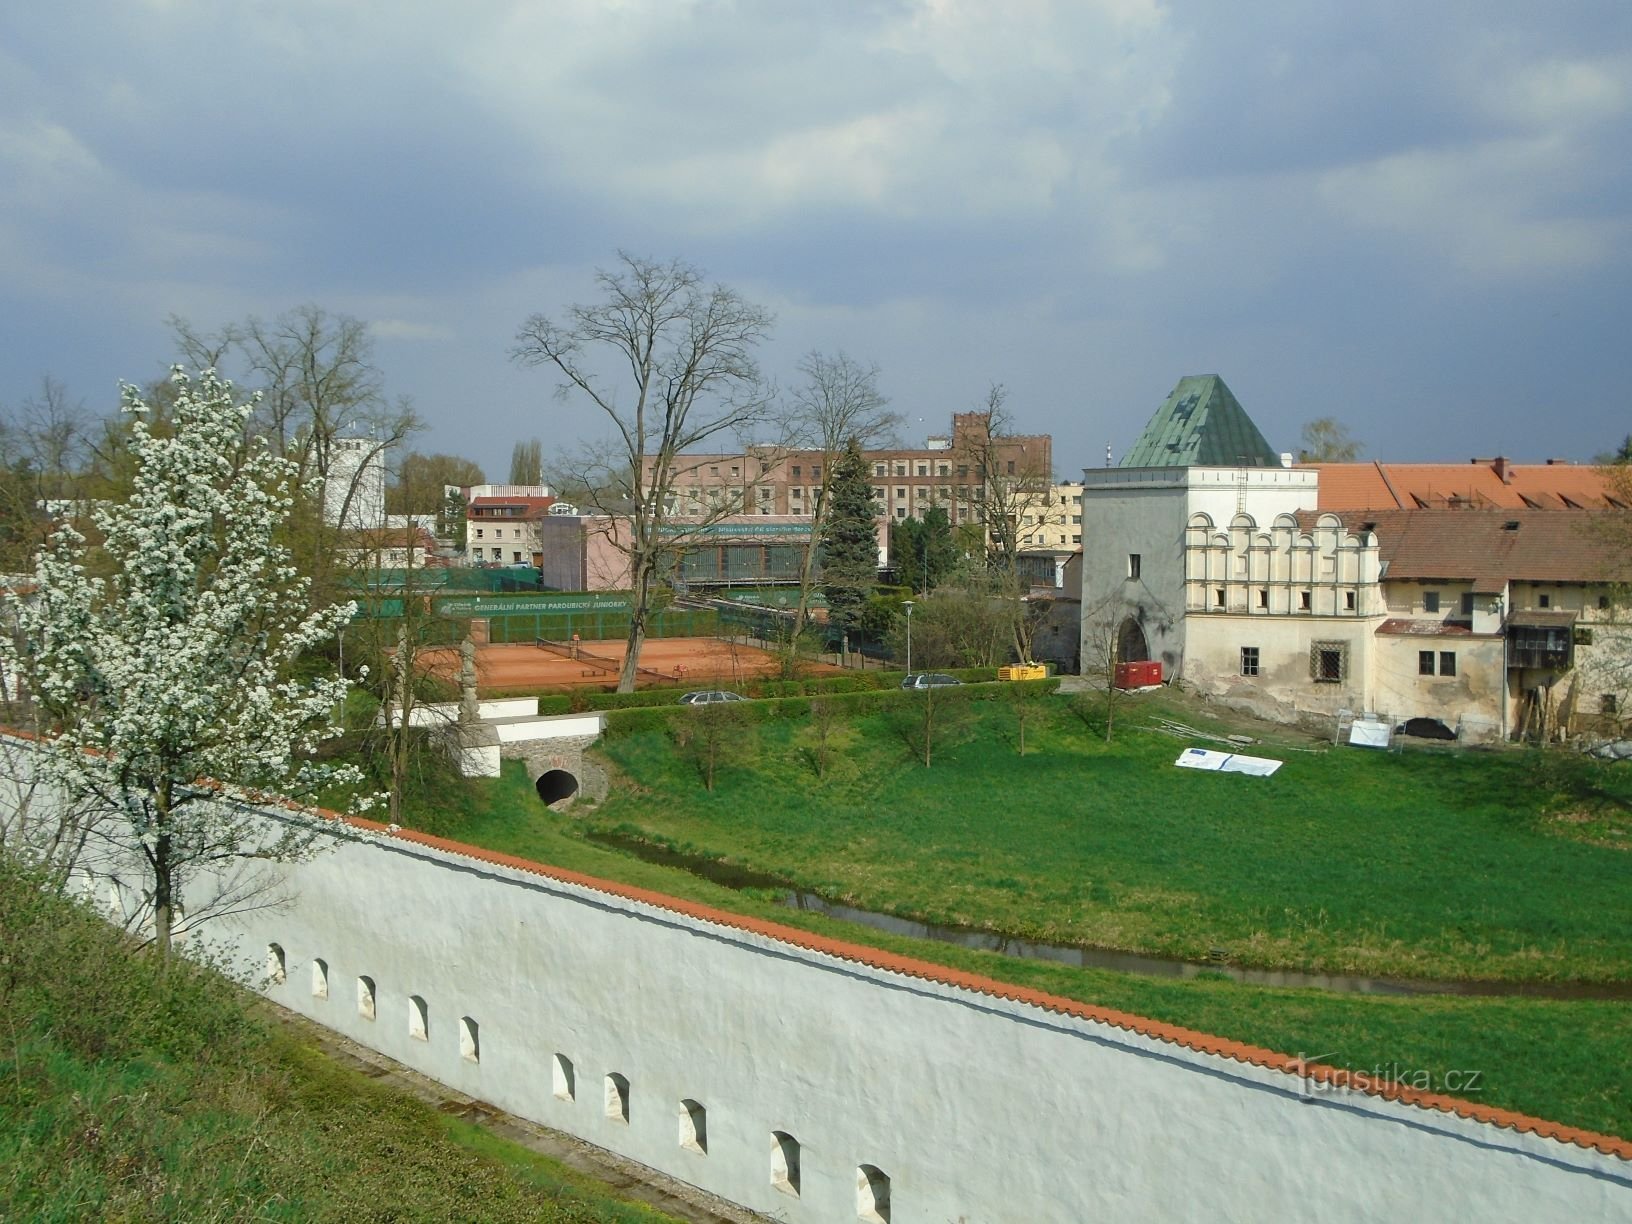 Vista del puente entre el castillo y Příhrádek (Pardubice, 17.4.2018/XNUMX/XNUMX)